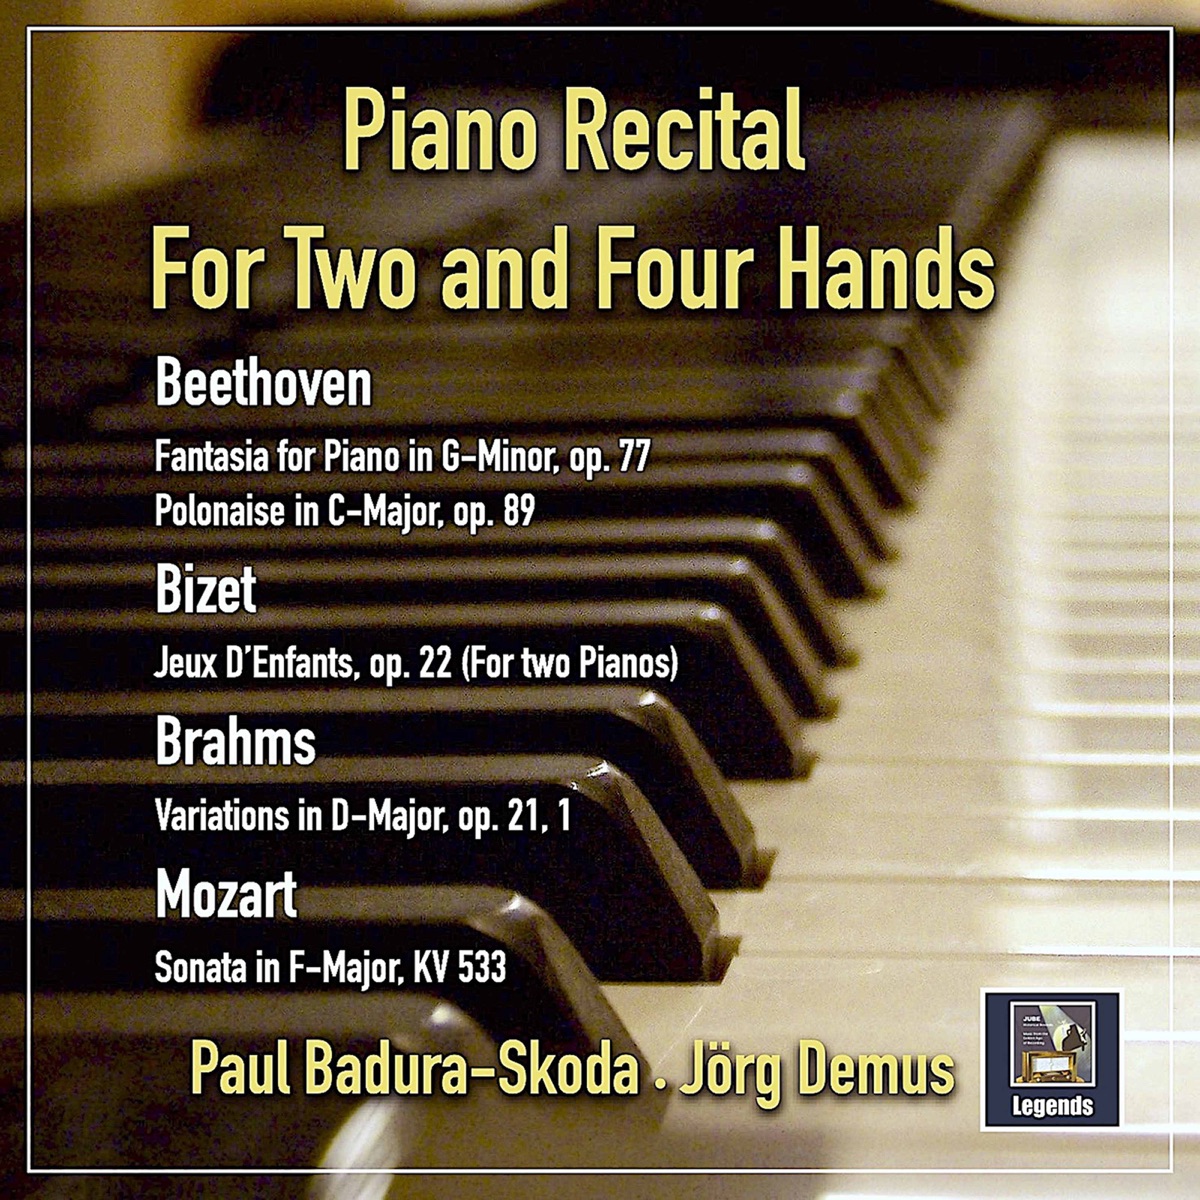 Piano Recital for Two and Four Hands - Album by Paul Badura-Skoda